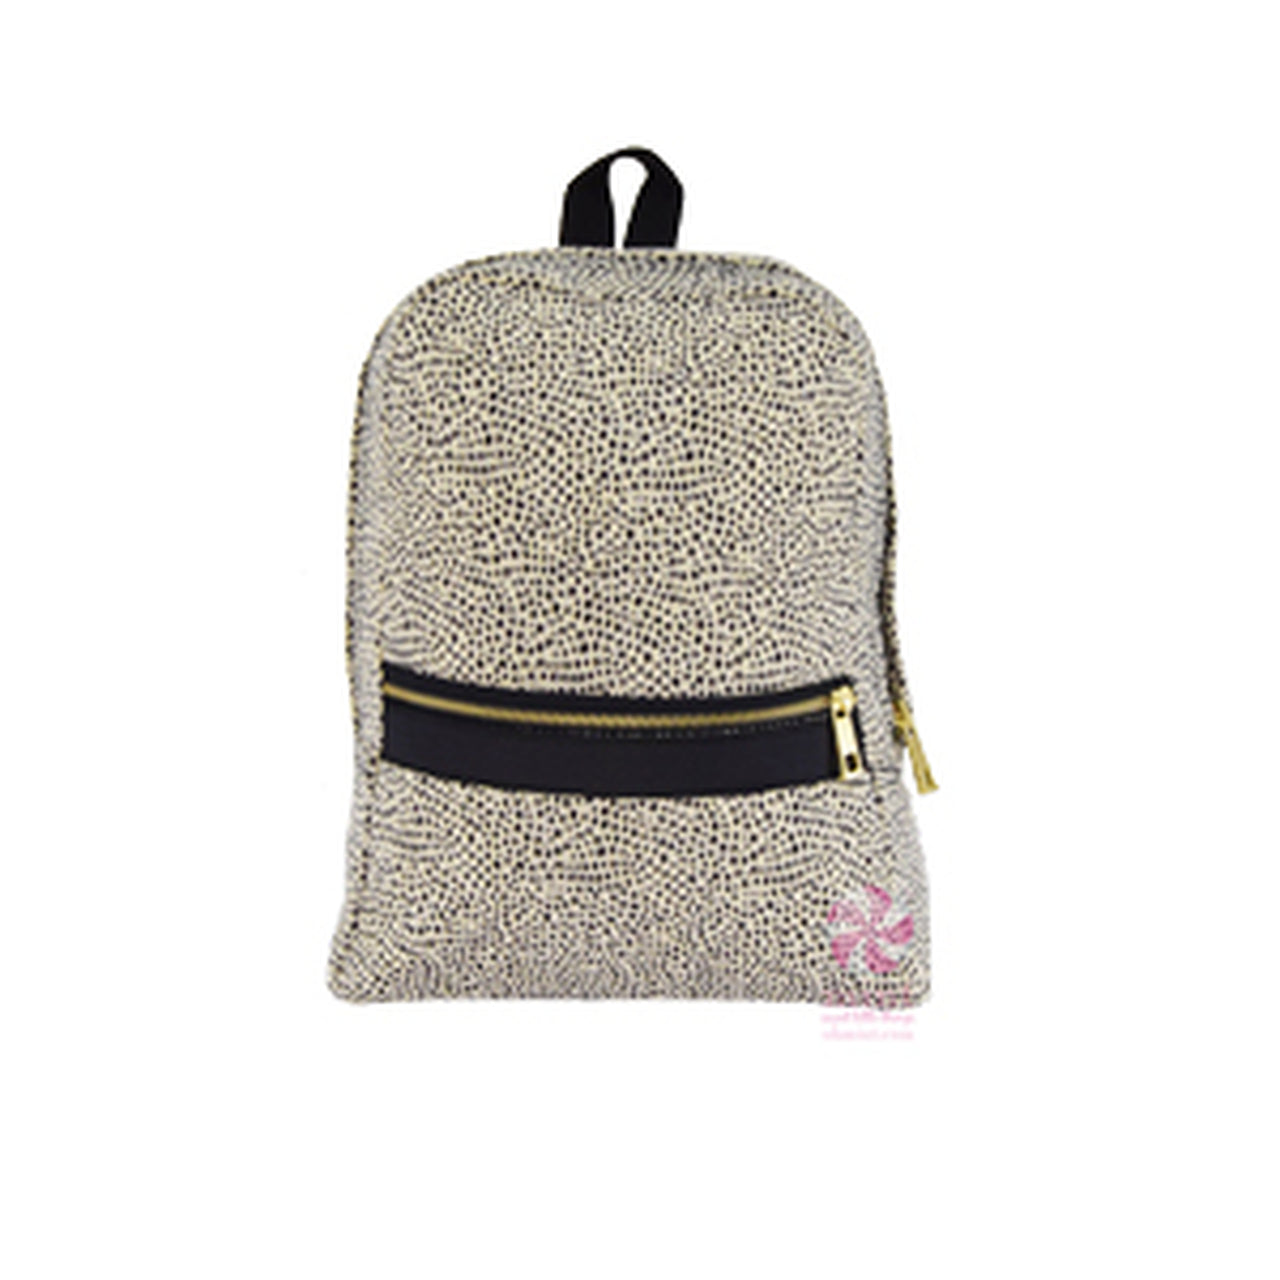 Small Backpack- Cheetah